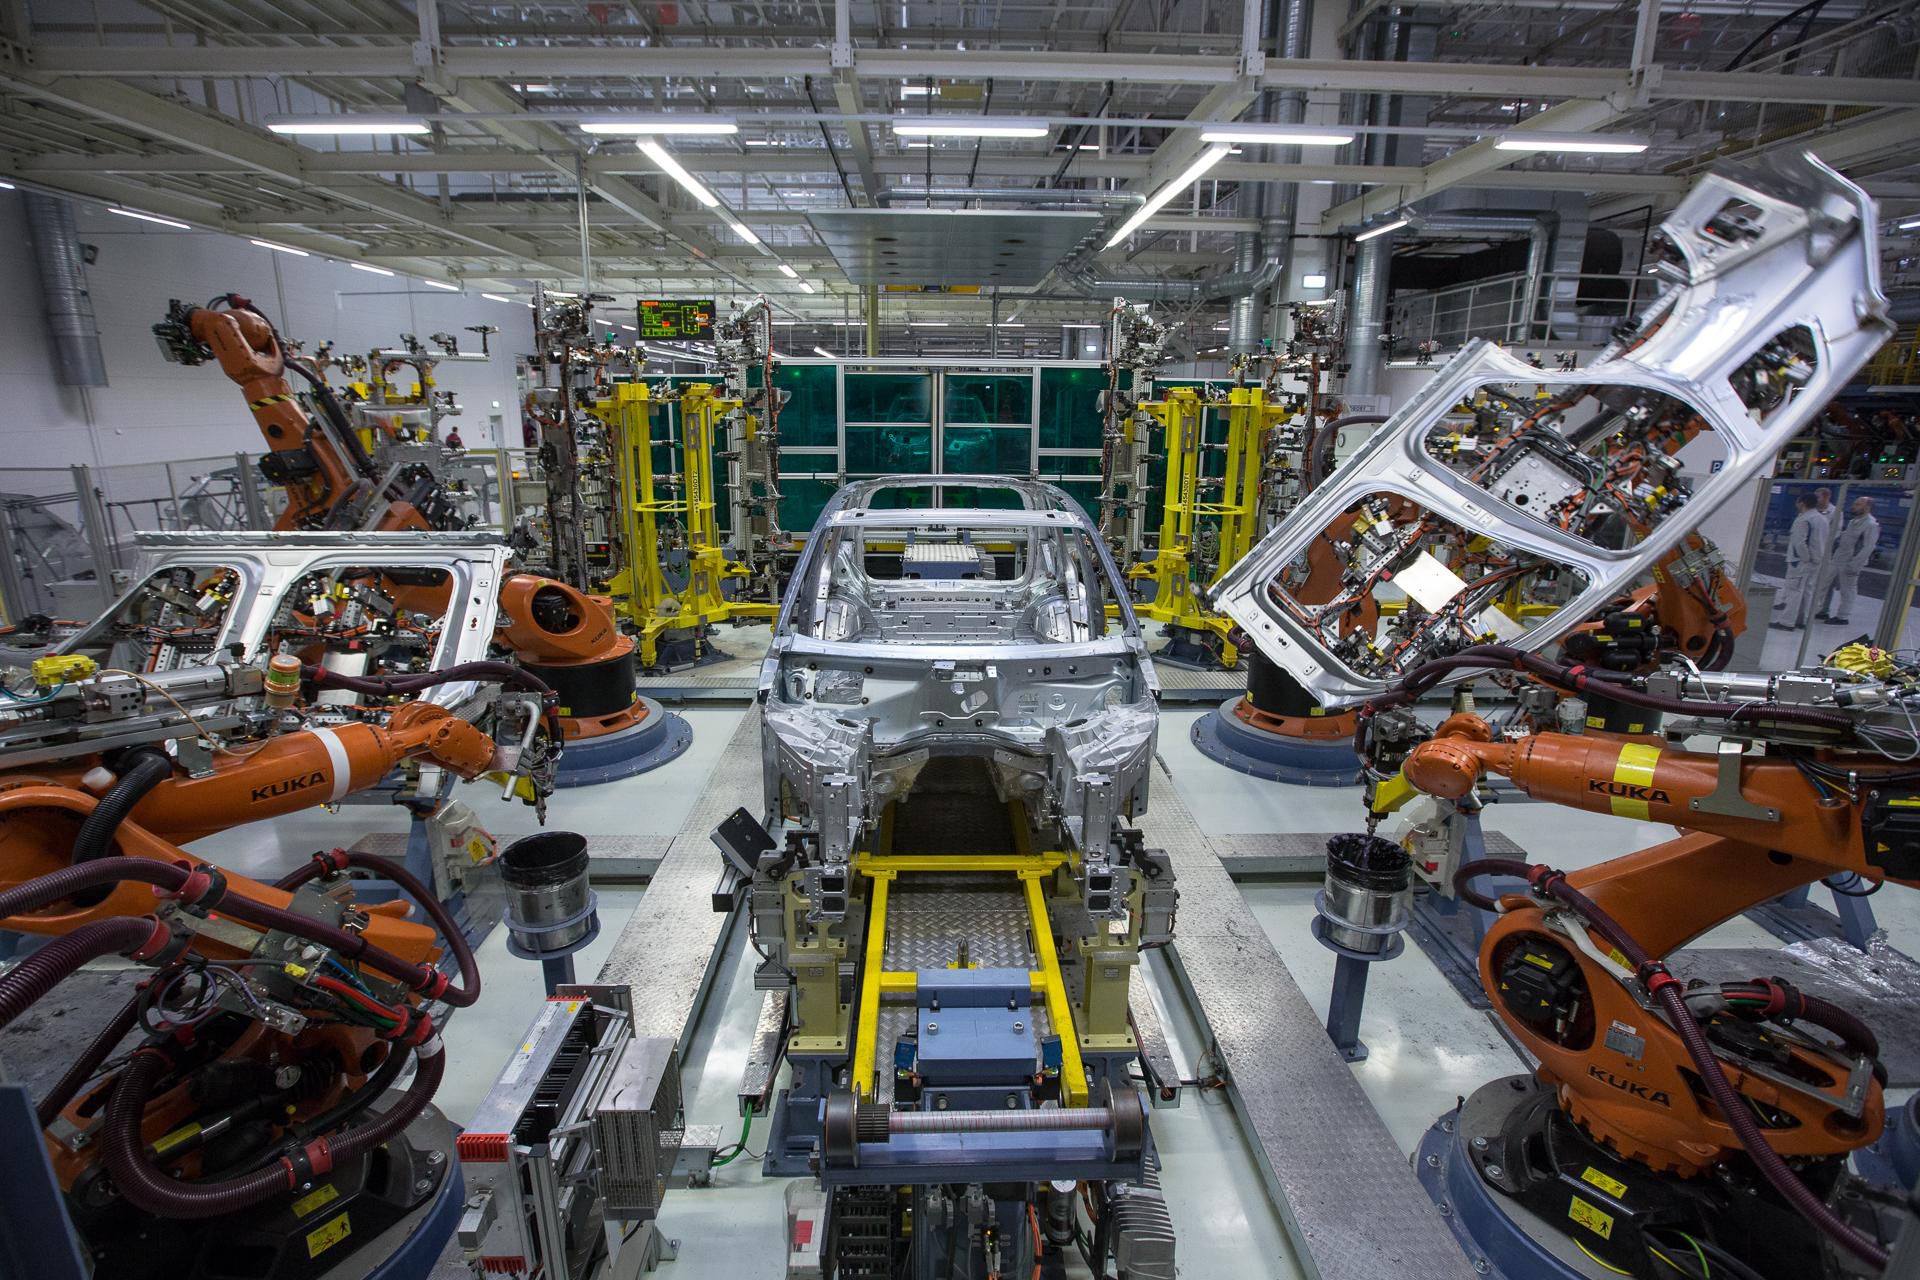 Spustenie výroby SUV vozidiel vo Volkswagen Slovakia sa zapísalo do histórie závodu ako najväčší investičný projekt